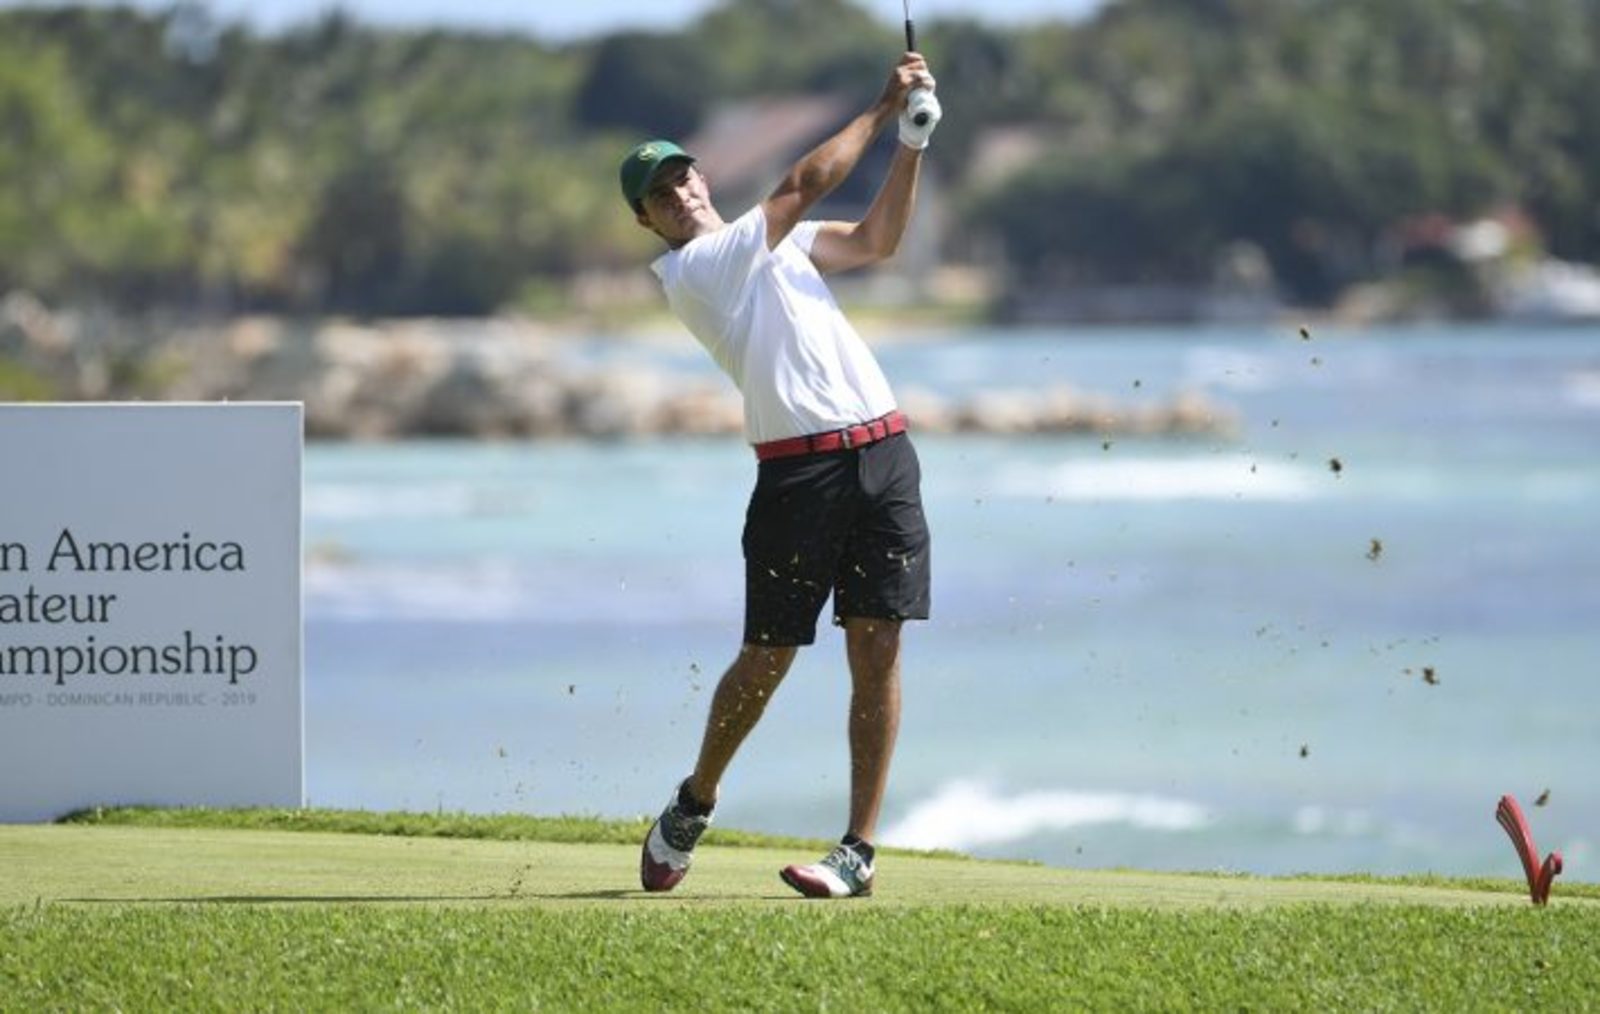 Álvaro Ortiz está en la cima del Campeonato Amateur Latinoamericano de golf tras sumar 208 golpes tras tres rondas, lleva un impacto de ventaja a dos jugadores que están igualados en segundo puesto.